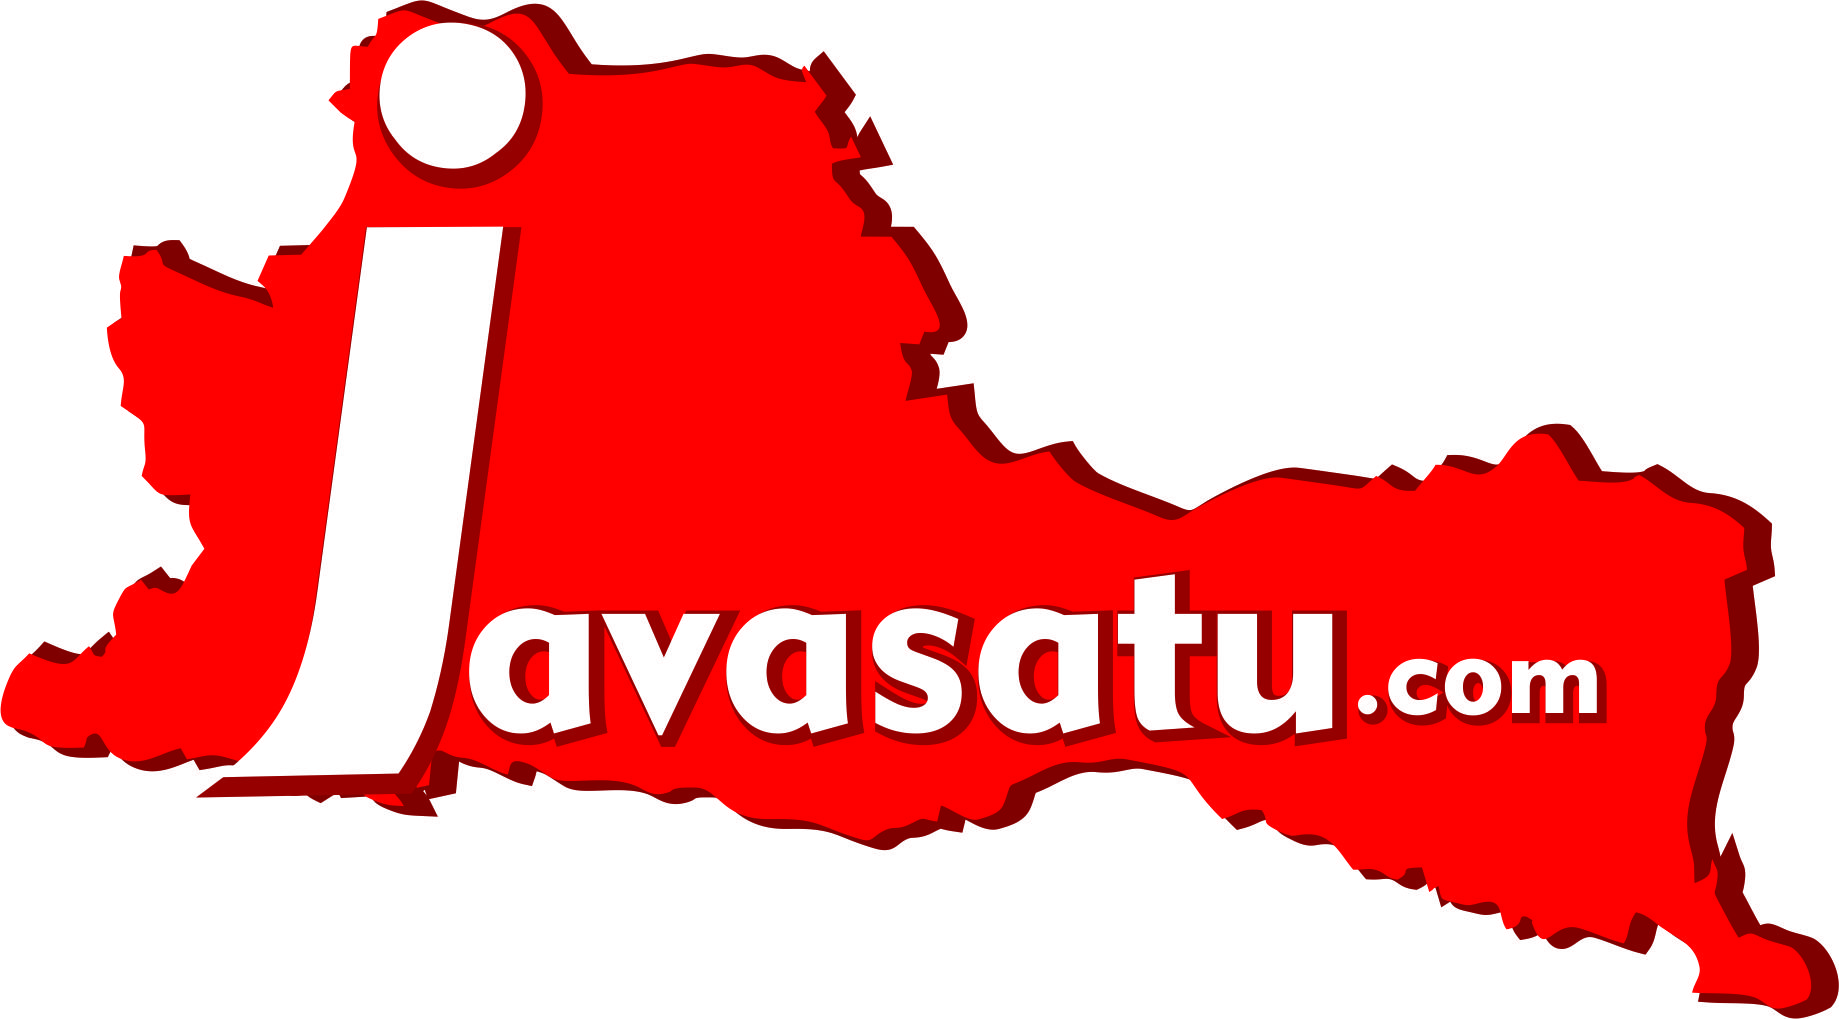 Laporan Khusus, Salahsatu Segmen di Javasatu.com yang Menyajikan Kegiatan Warga